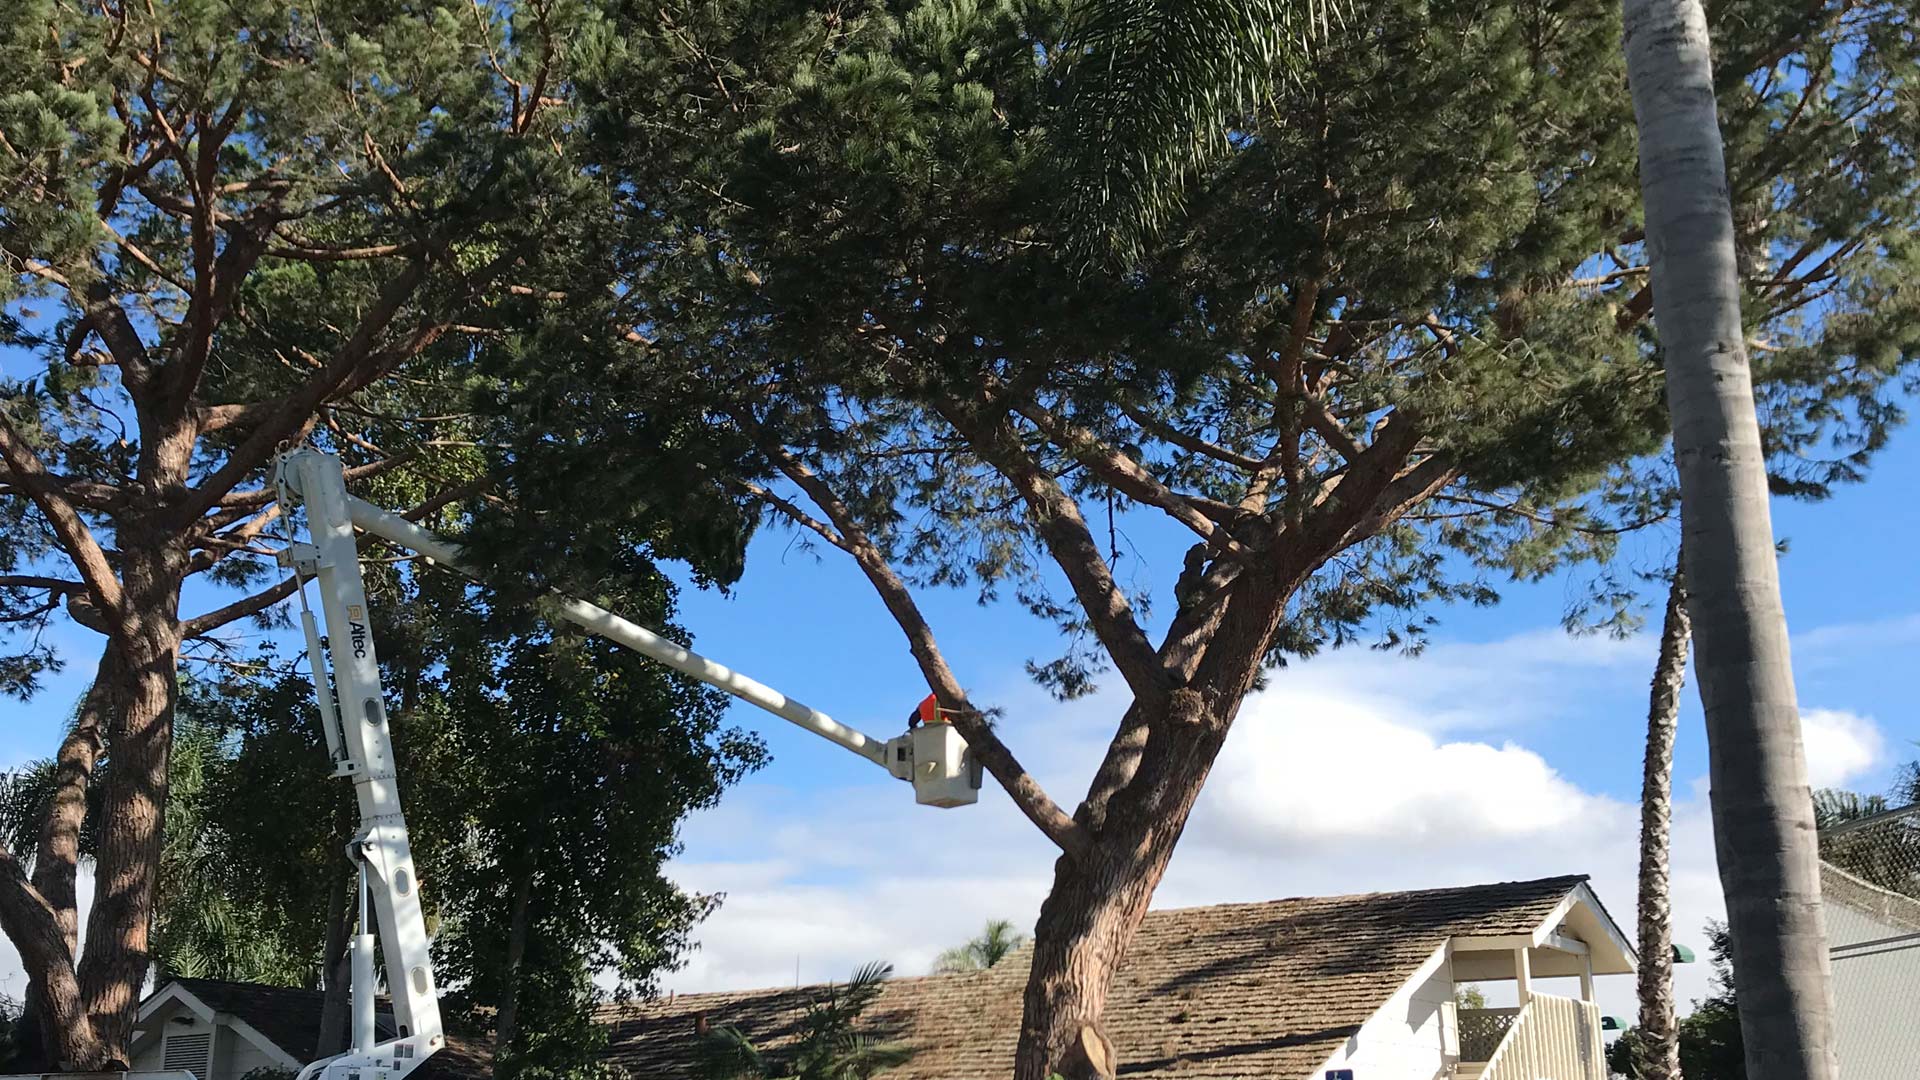 Crew trimming tree limbs near Carlsbad, CA.